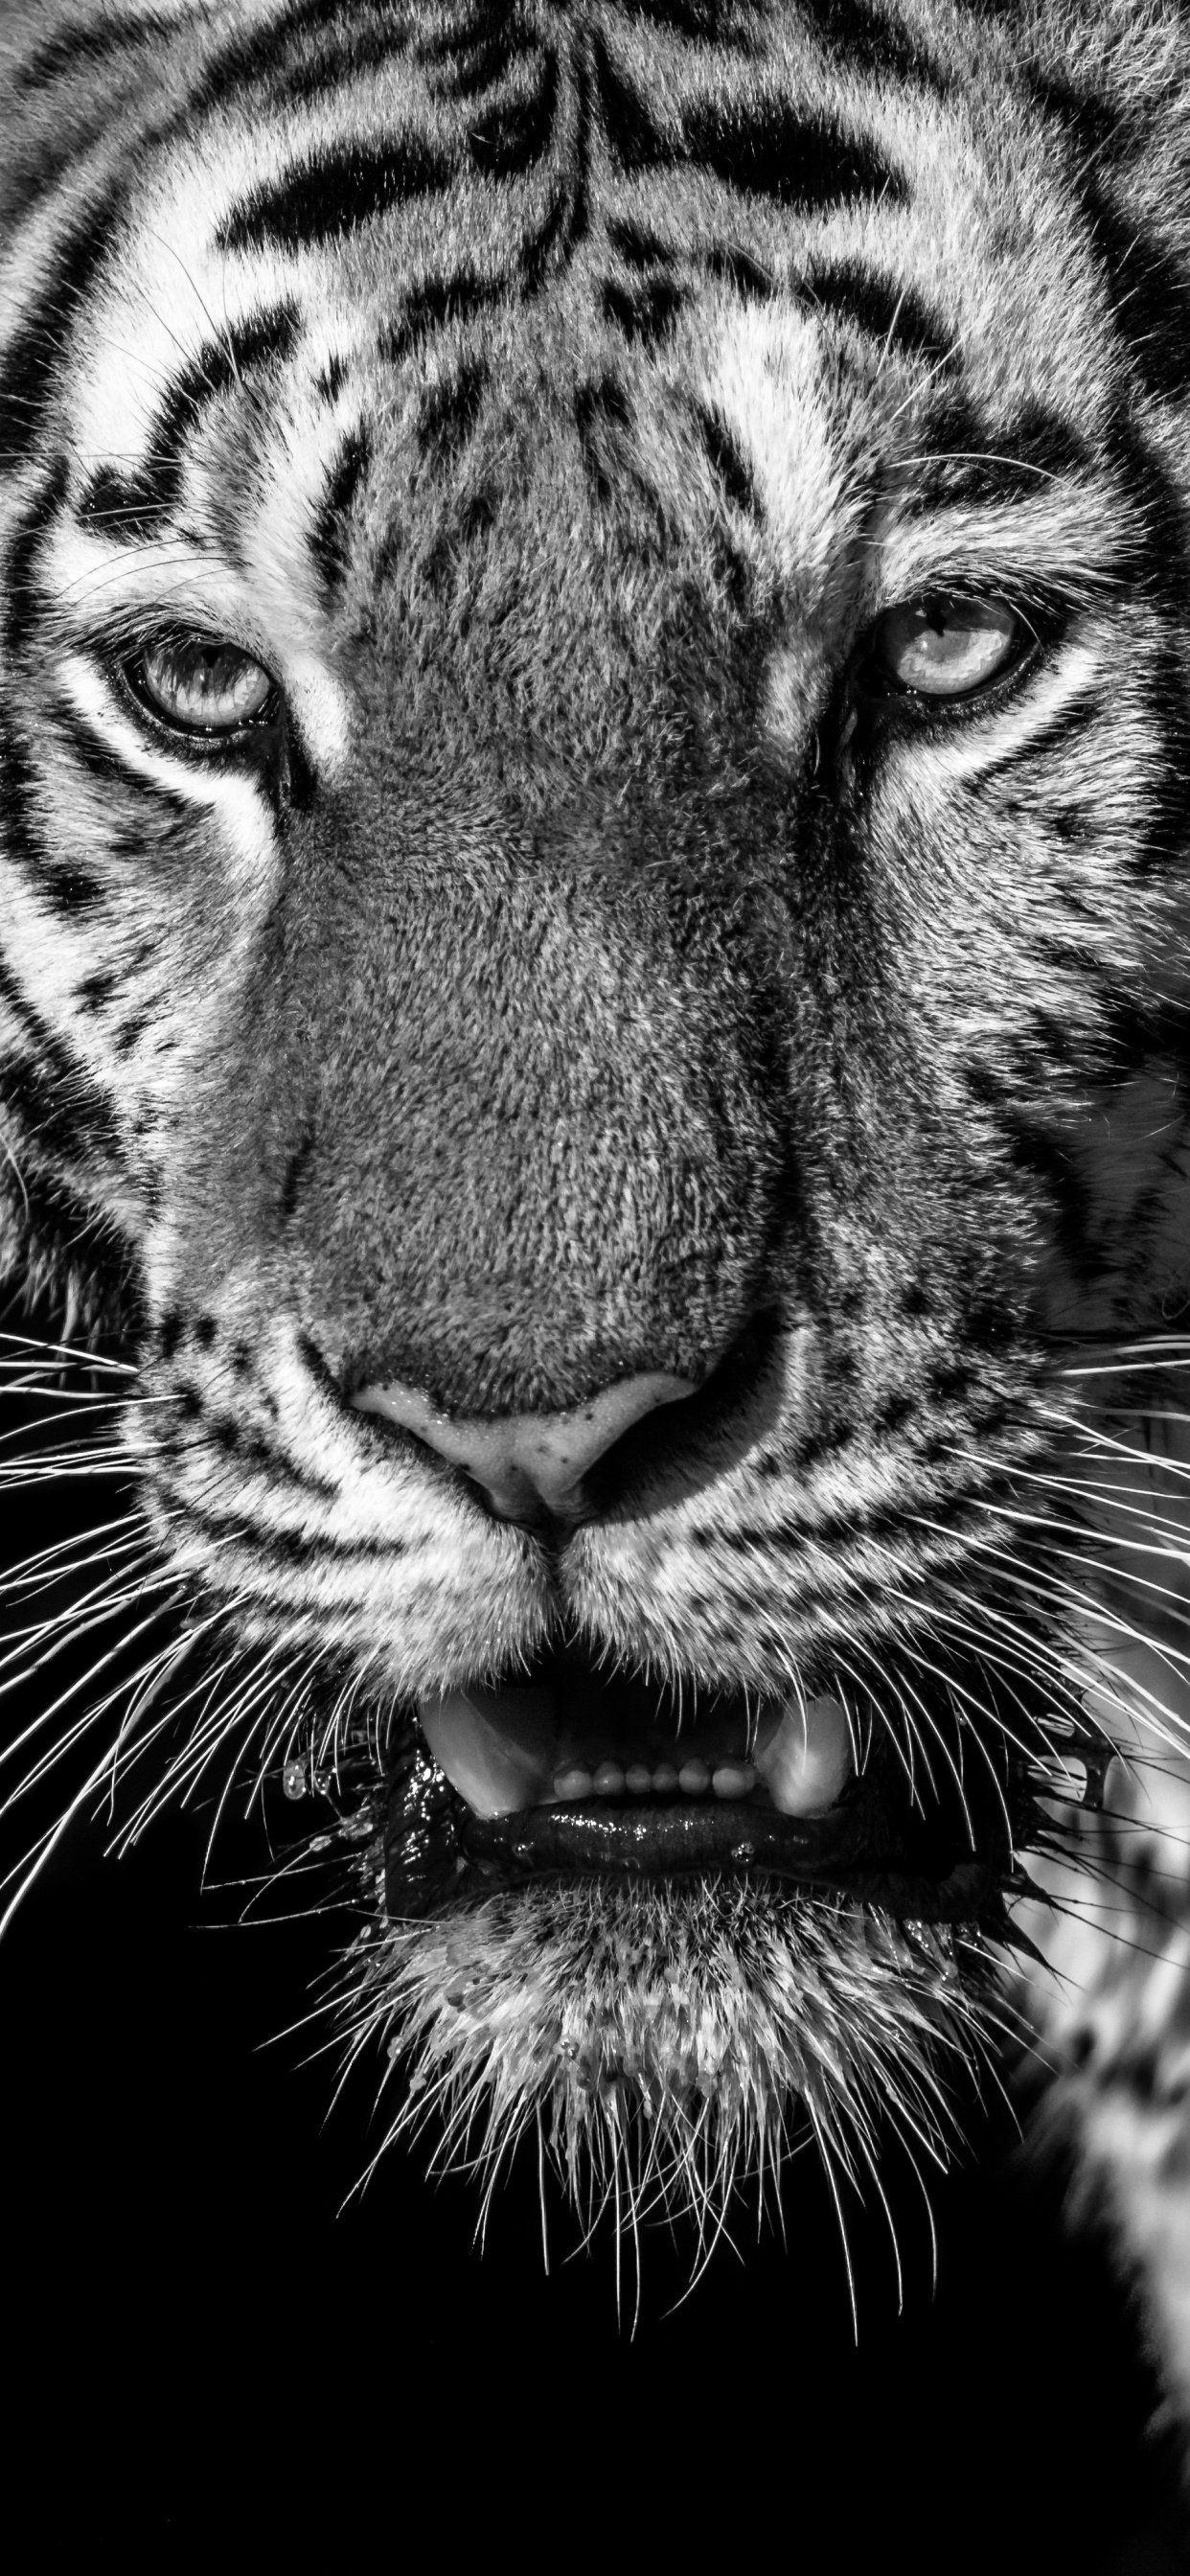 老虎, 白虎, 孟加拉虎, 野生动物, 胡须 壁纸 1242x2688 允许